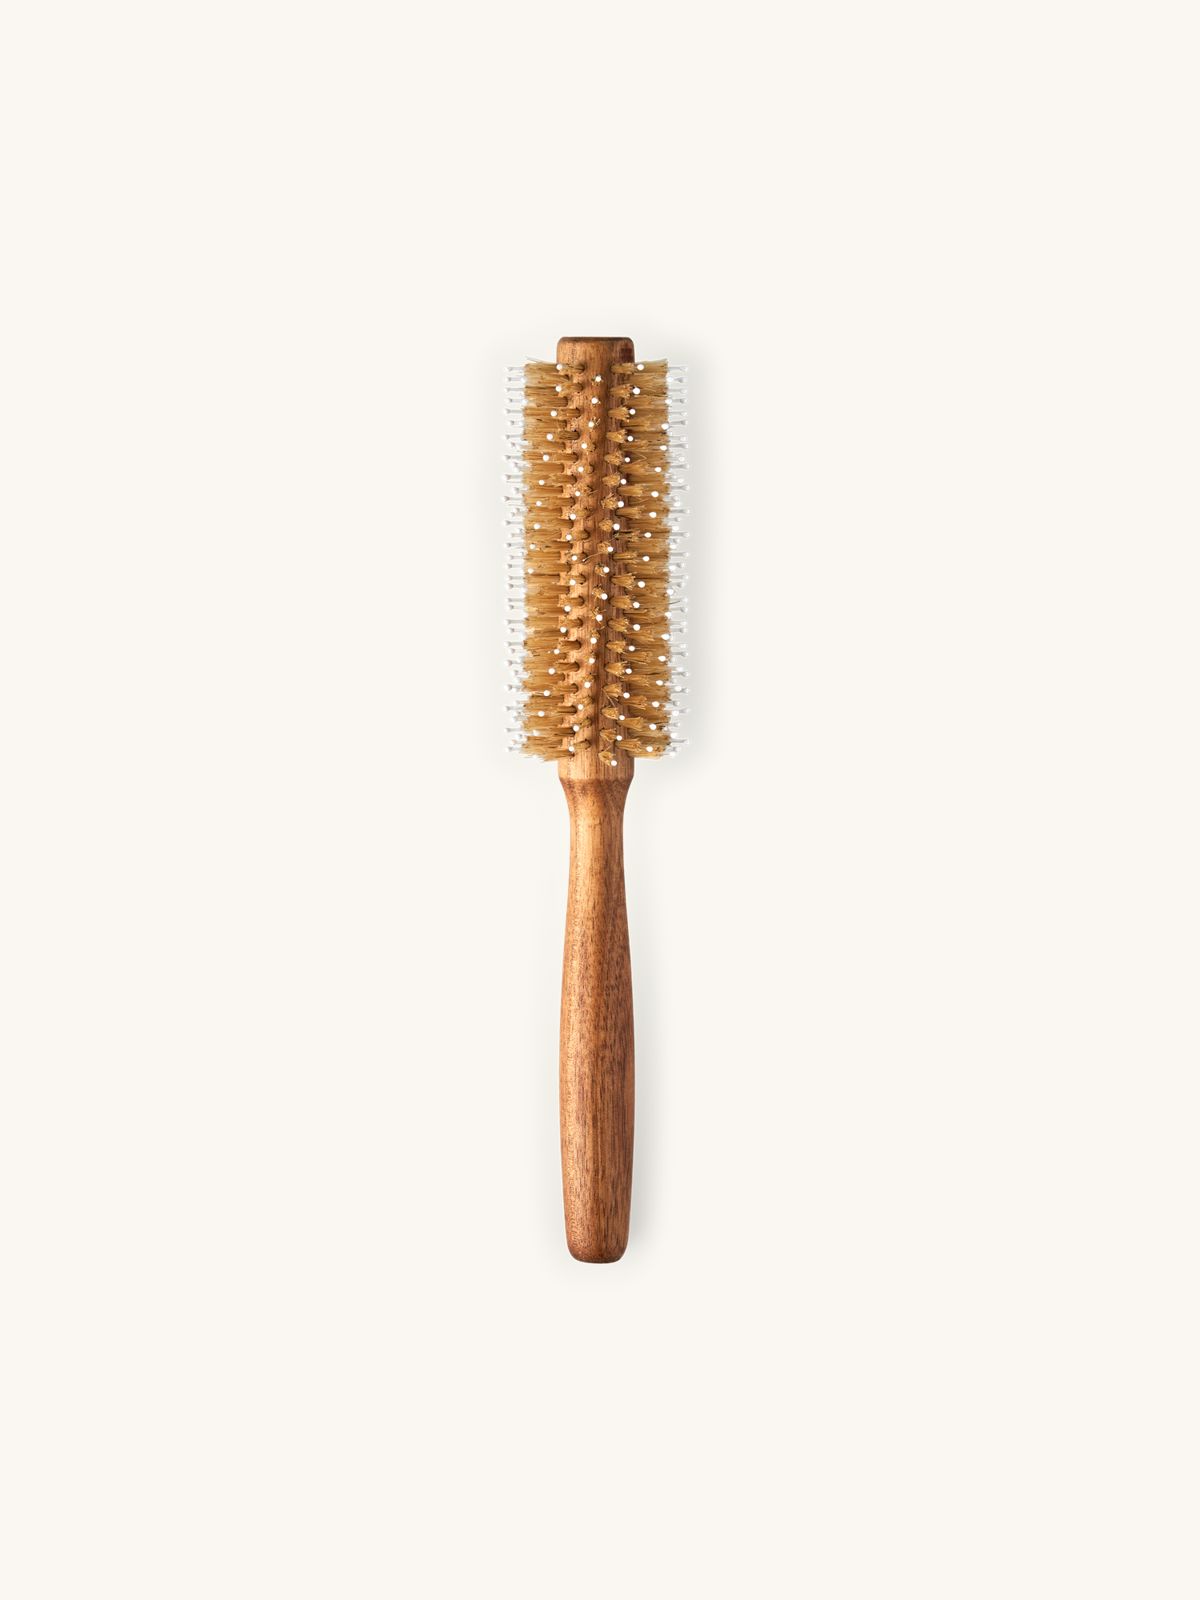 Brosse à cheveux | Bois d’acacia/soies de porc/nylon. 26 x 4,4 cm. | Søstrene Grene